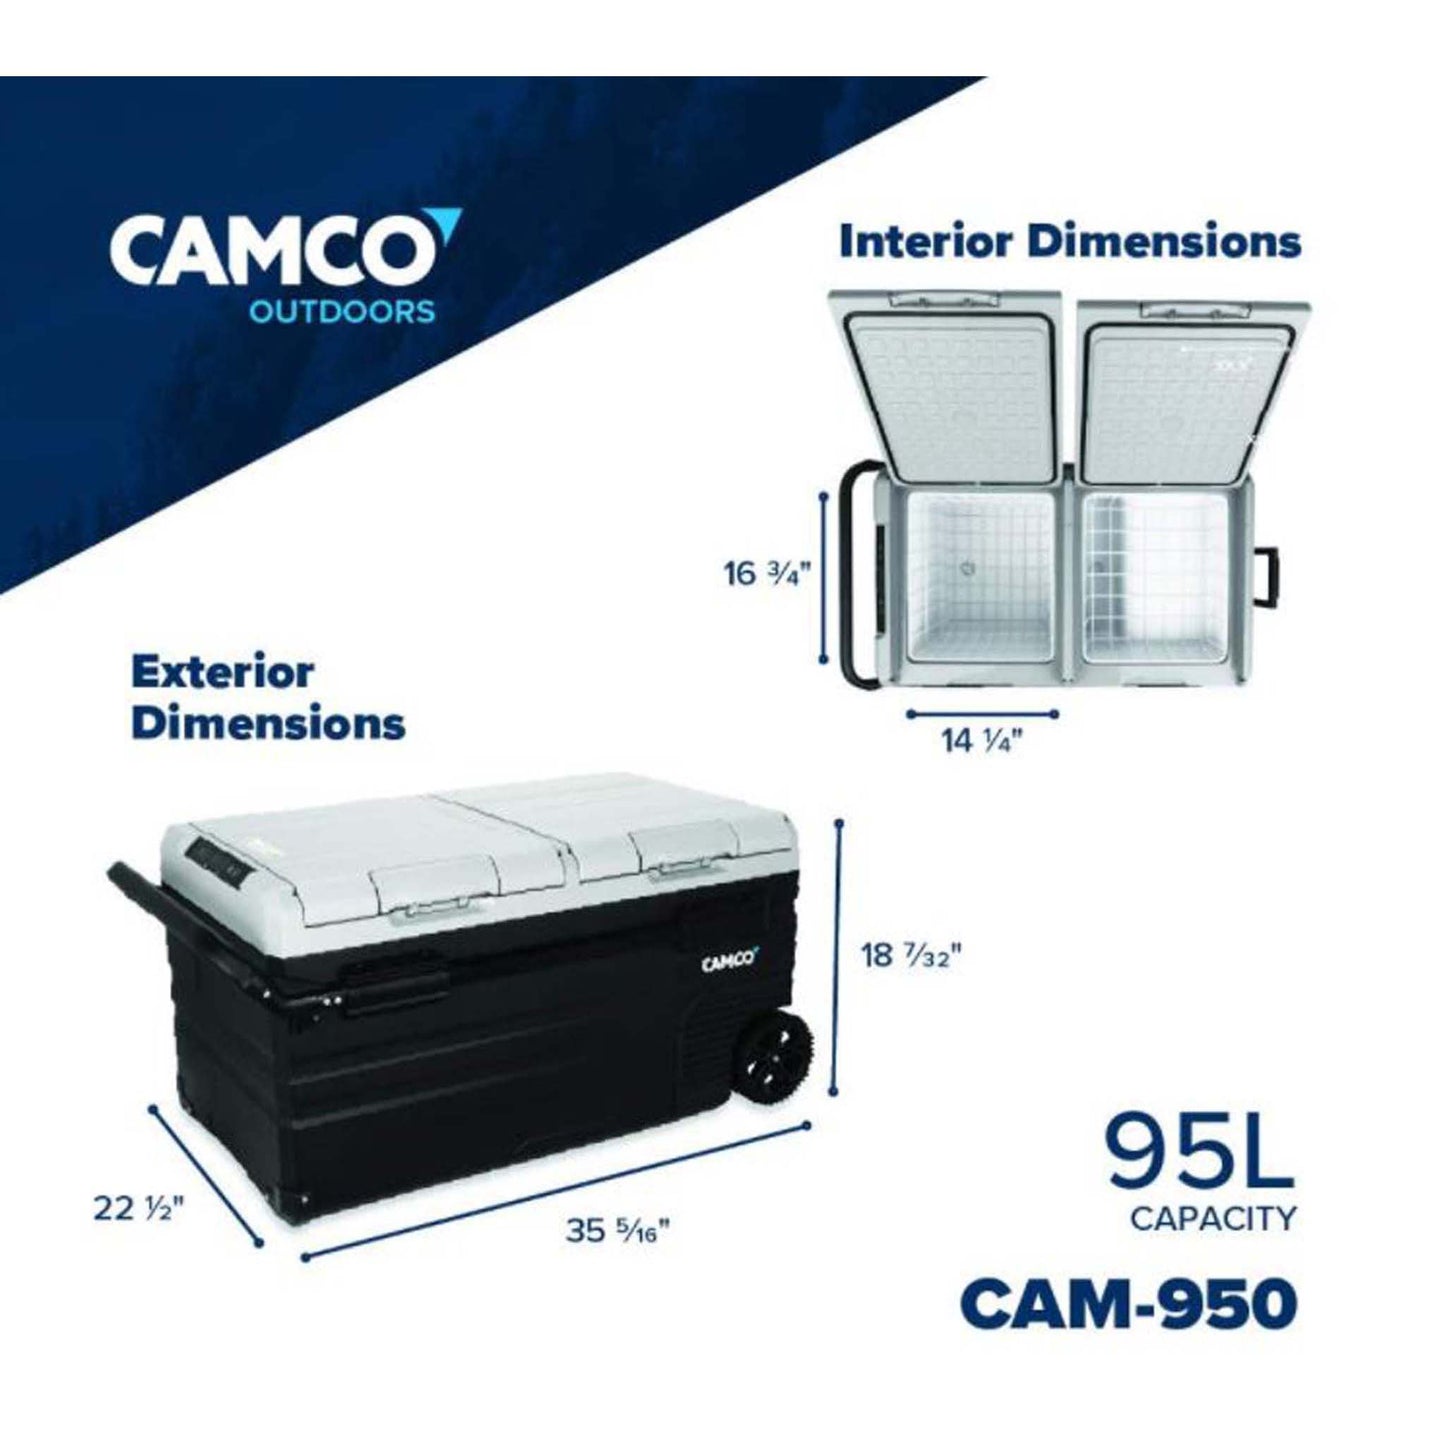 CAM-950 Portable Refrigerator, AC 110V / DC 12V Compact Fridge / Freezer with Dual Zone Cooling, 95-Liter